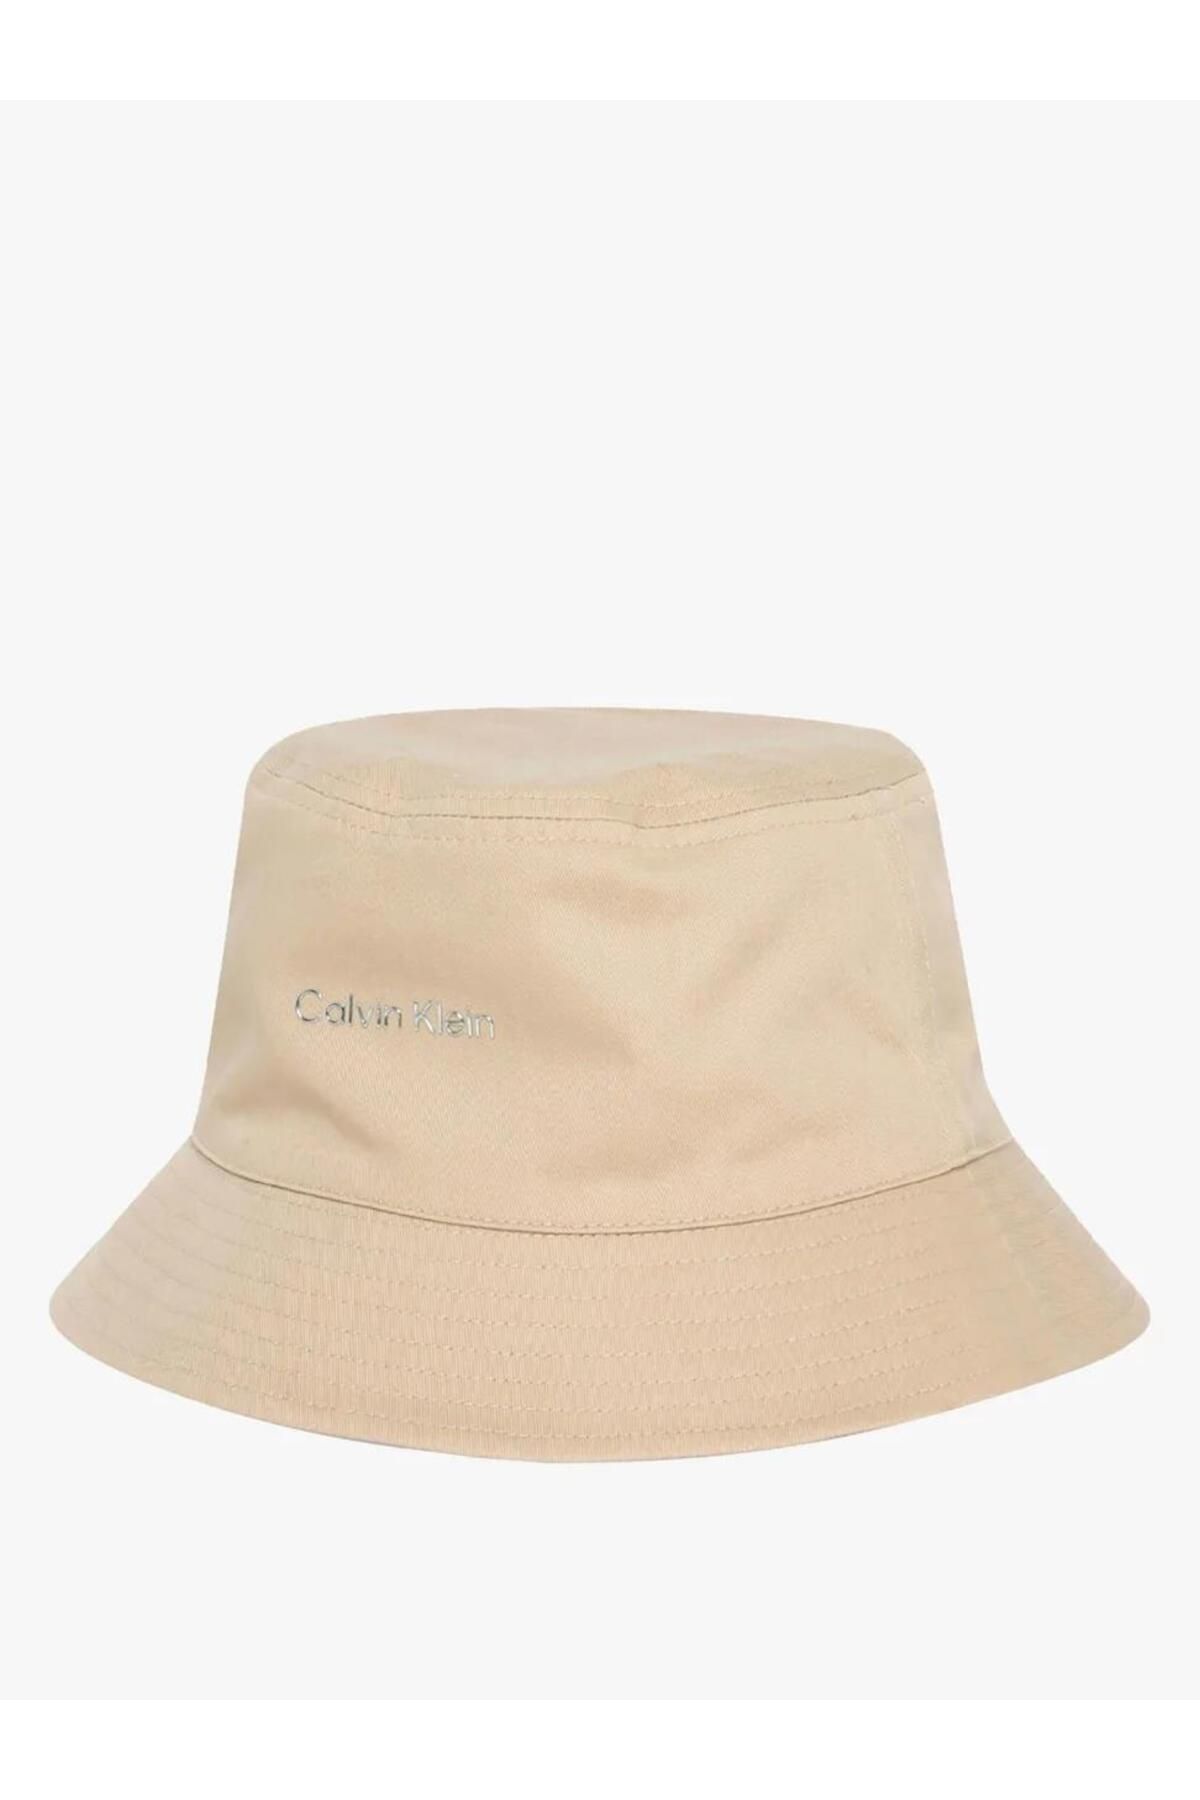 Calvin Klein CK MUST REV BUCKET HAT